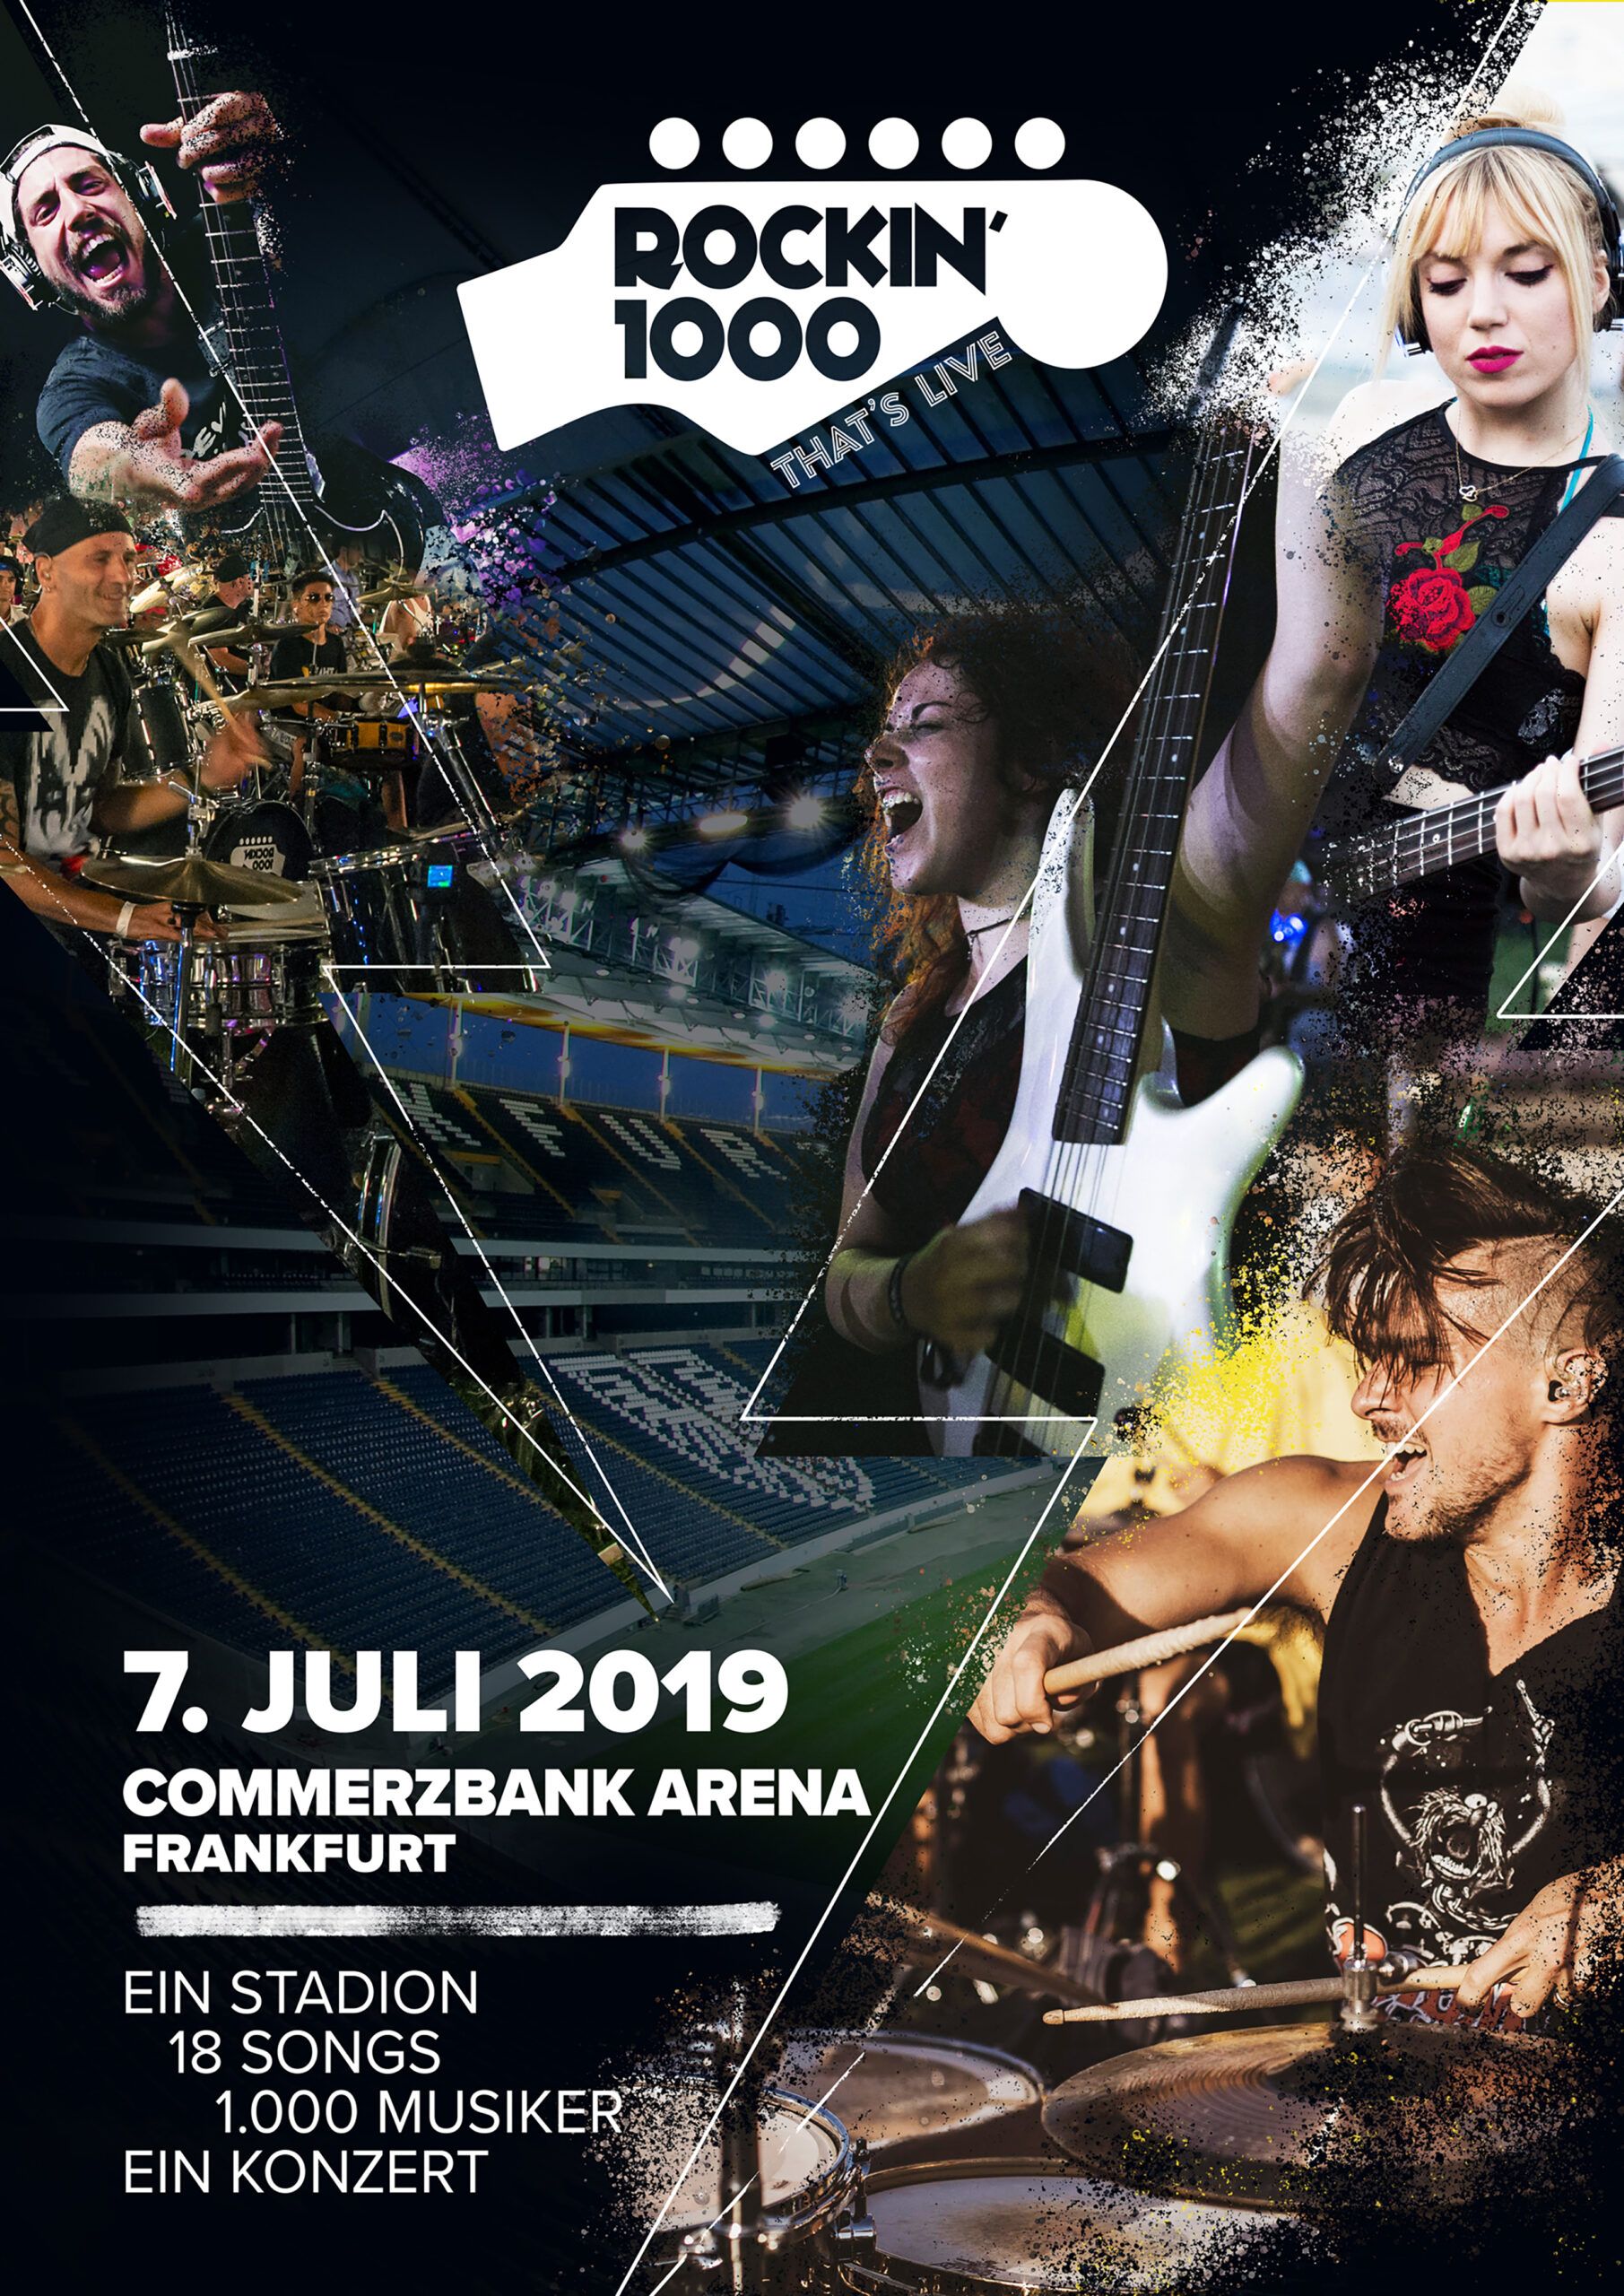 "Rockin' 1000": MusikerInnen für Konzert der weltgrößten Rockband in Frankfurt gesucht